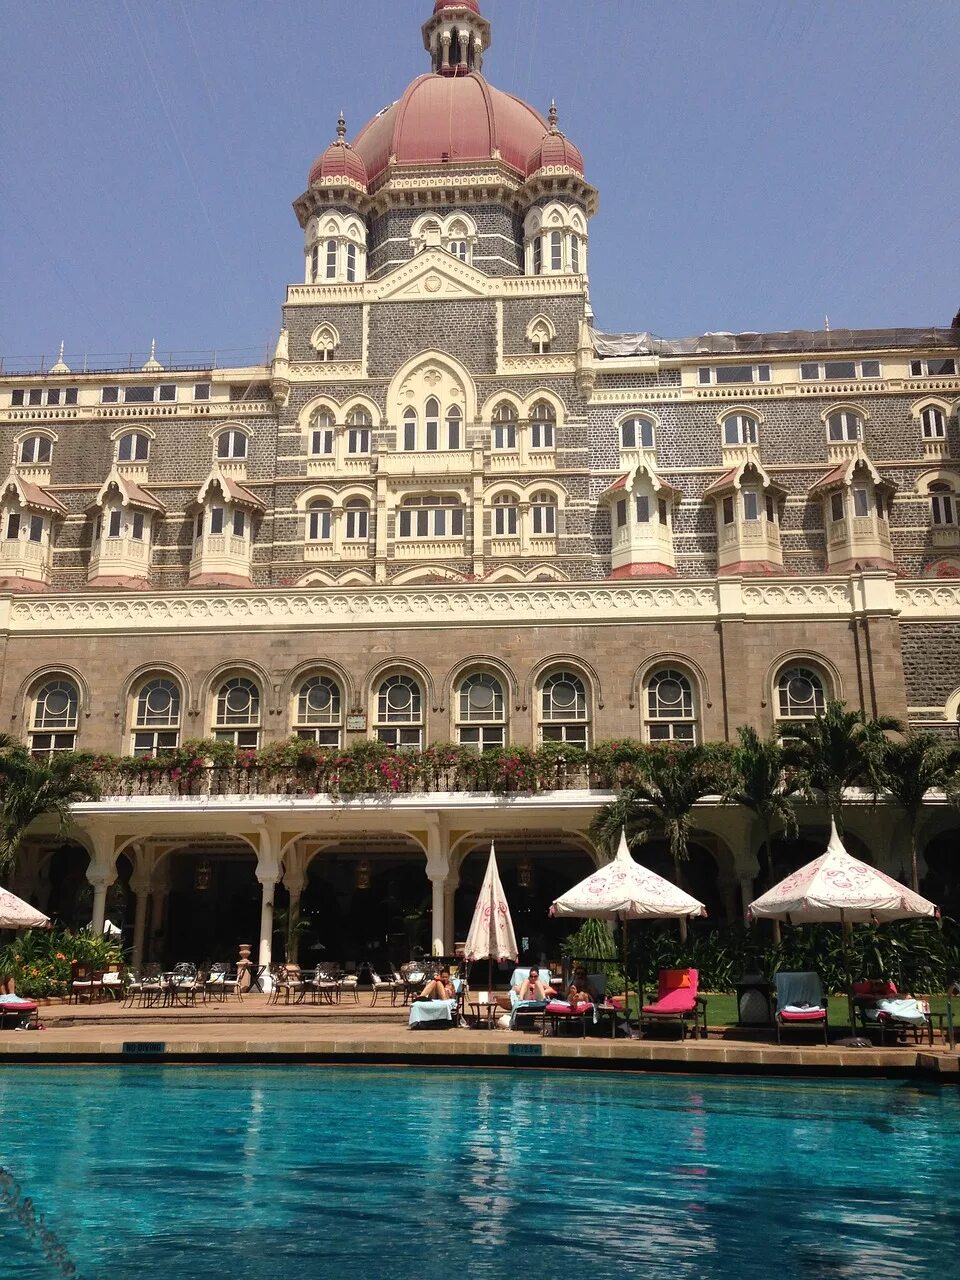 Отель тадж махал 2008. Отель Тадж в Мумбаи. Дворец-отель «Тадж-Махал» Мумбай. Гостиница Тадж Махал в Мумбаи. Отель Тадж Махал в Мумбаи сейчас.